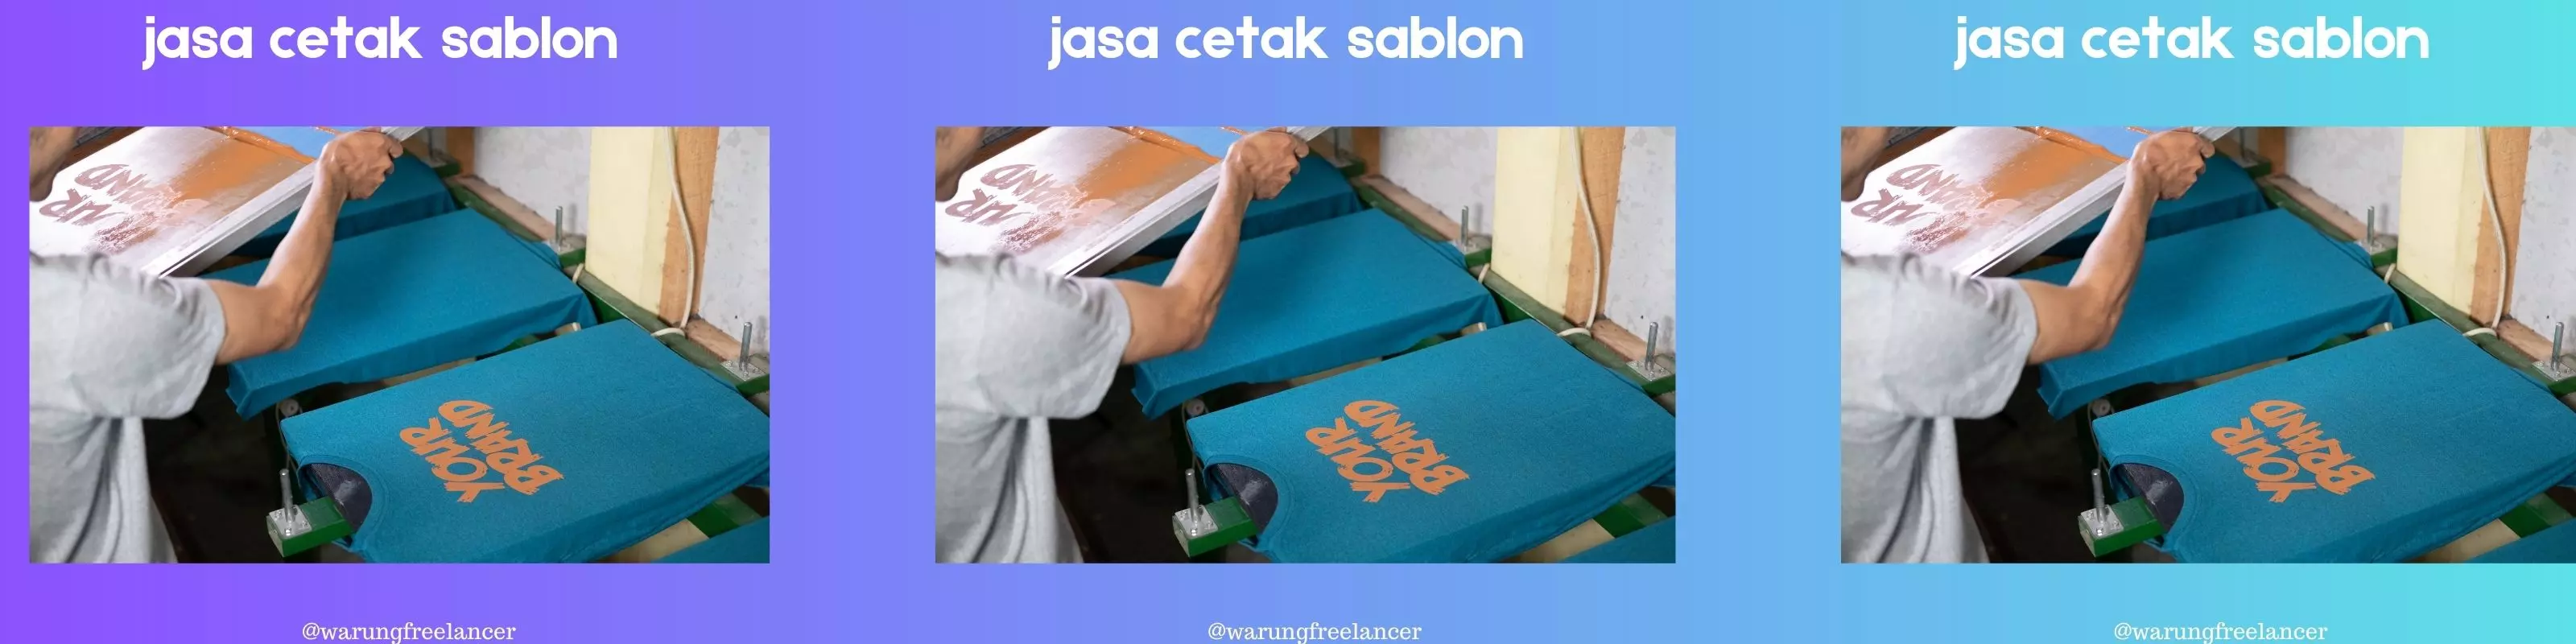 Jasa Cetak Sablon